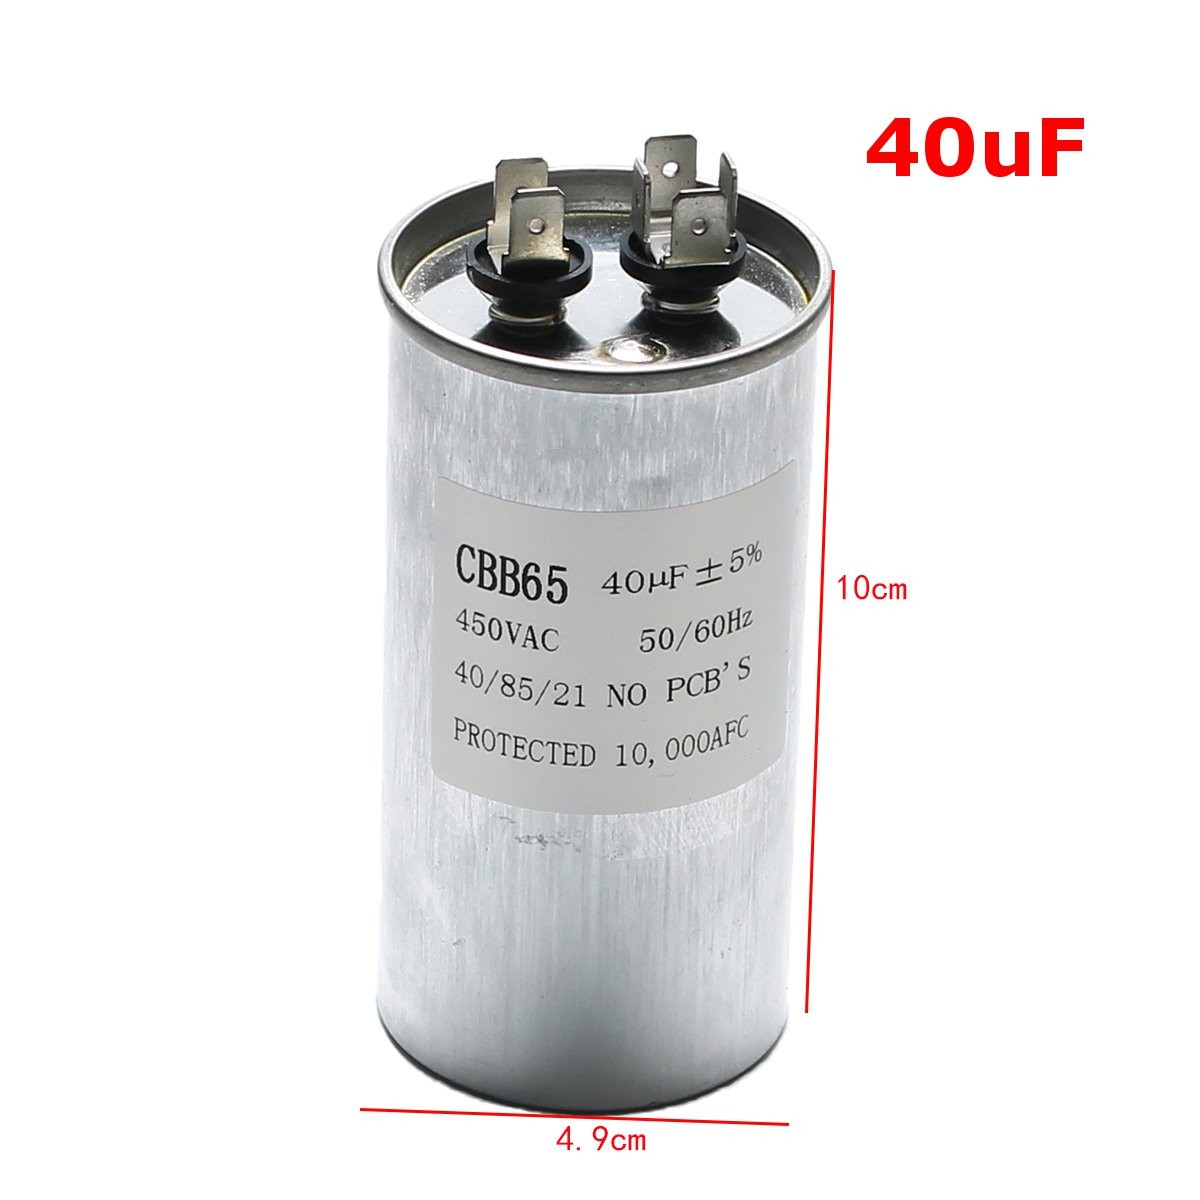 15-50uF-Motor-Capacitor-CBB65-450VAC-Air-Conditioner-Compressor-Start-Capacitor-1135343-7